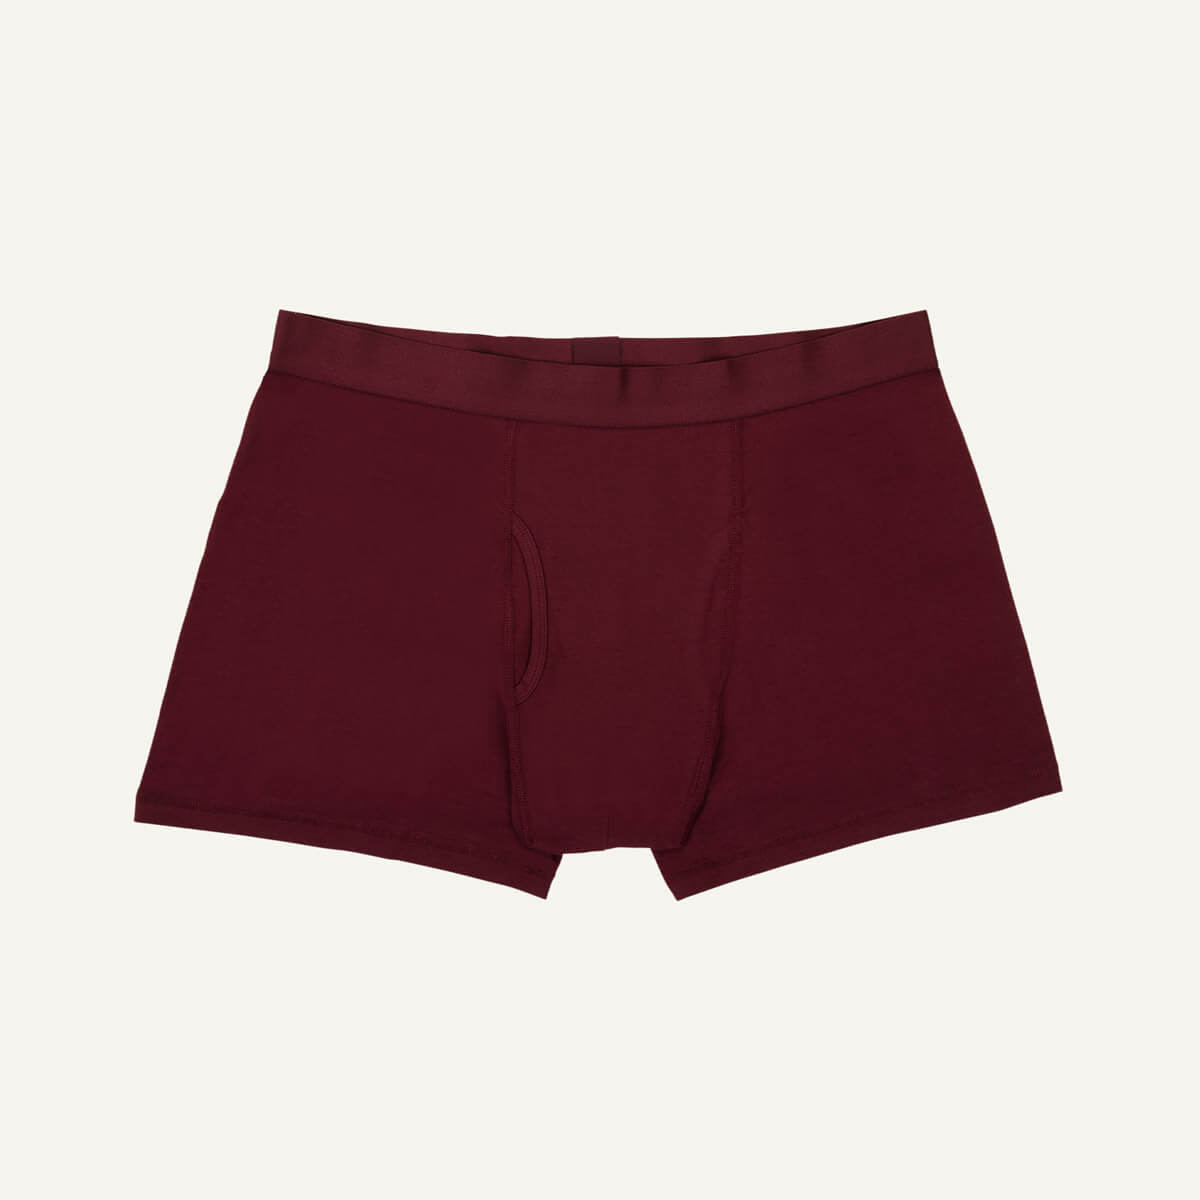 Subset Organic Cotton Men's Boxer Brief Underwear: In sizes S-2XL